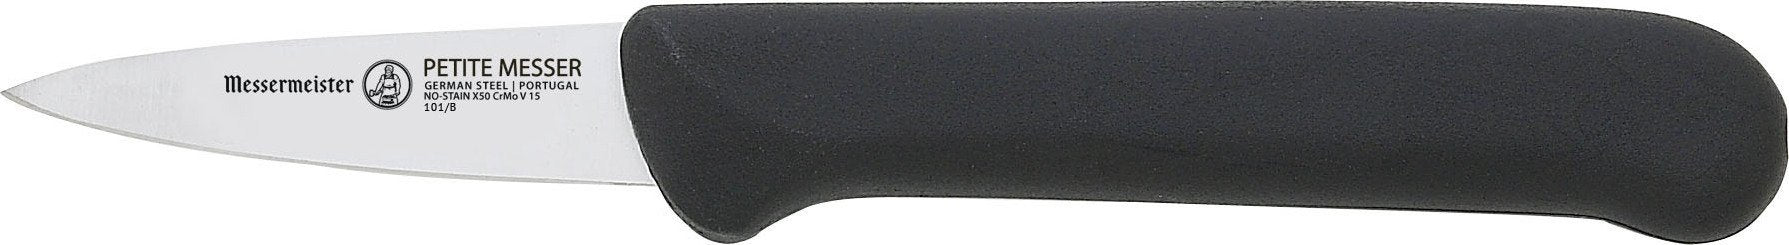 Messermeister - 2" Garnishing Knife with Matching Sheath - 101/B